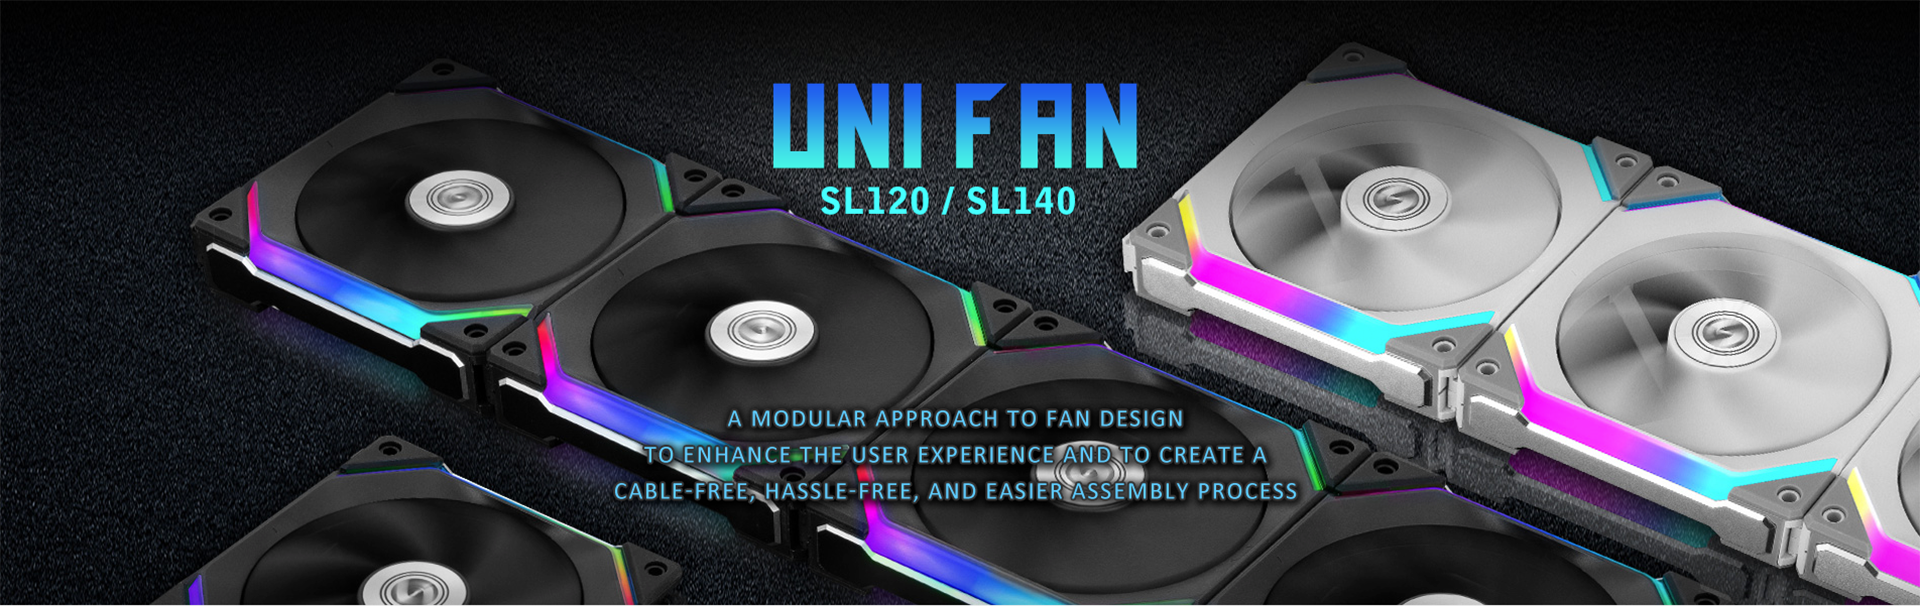 PC/タブレット PCパーツ UNI FAN SL120 / SL140 - Daisychainable Fan